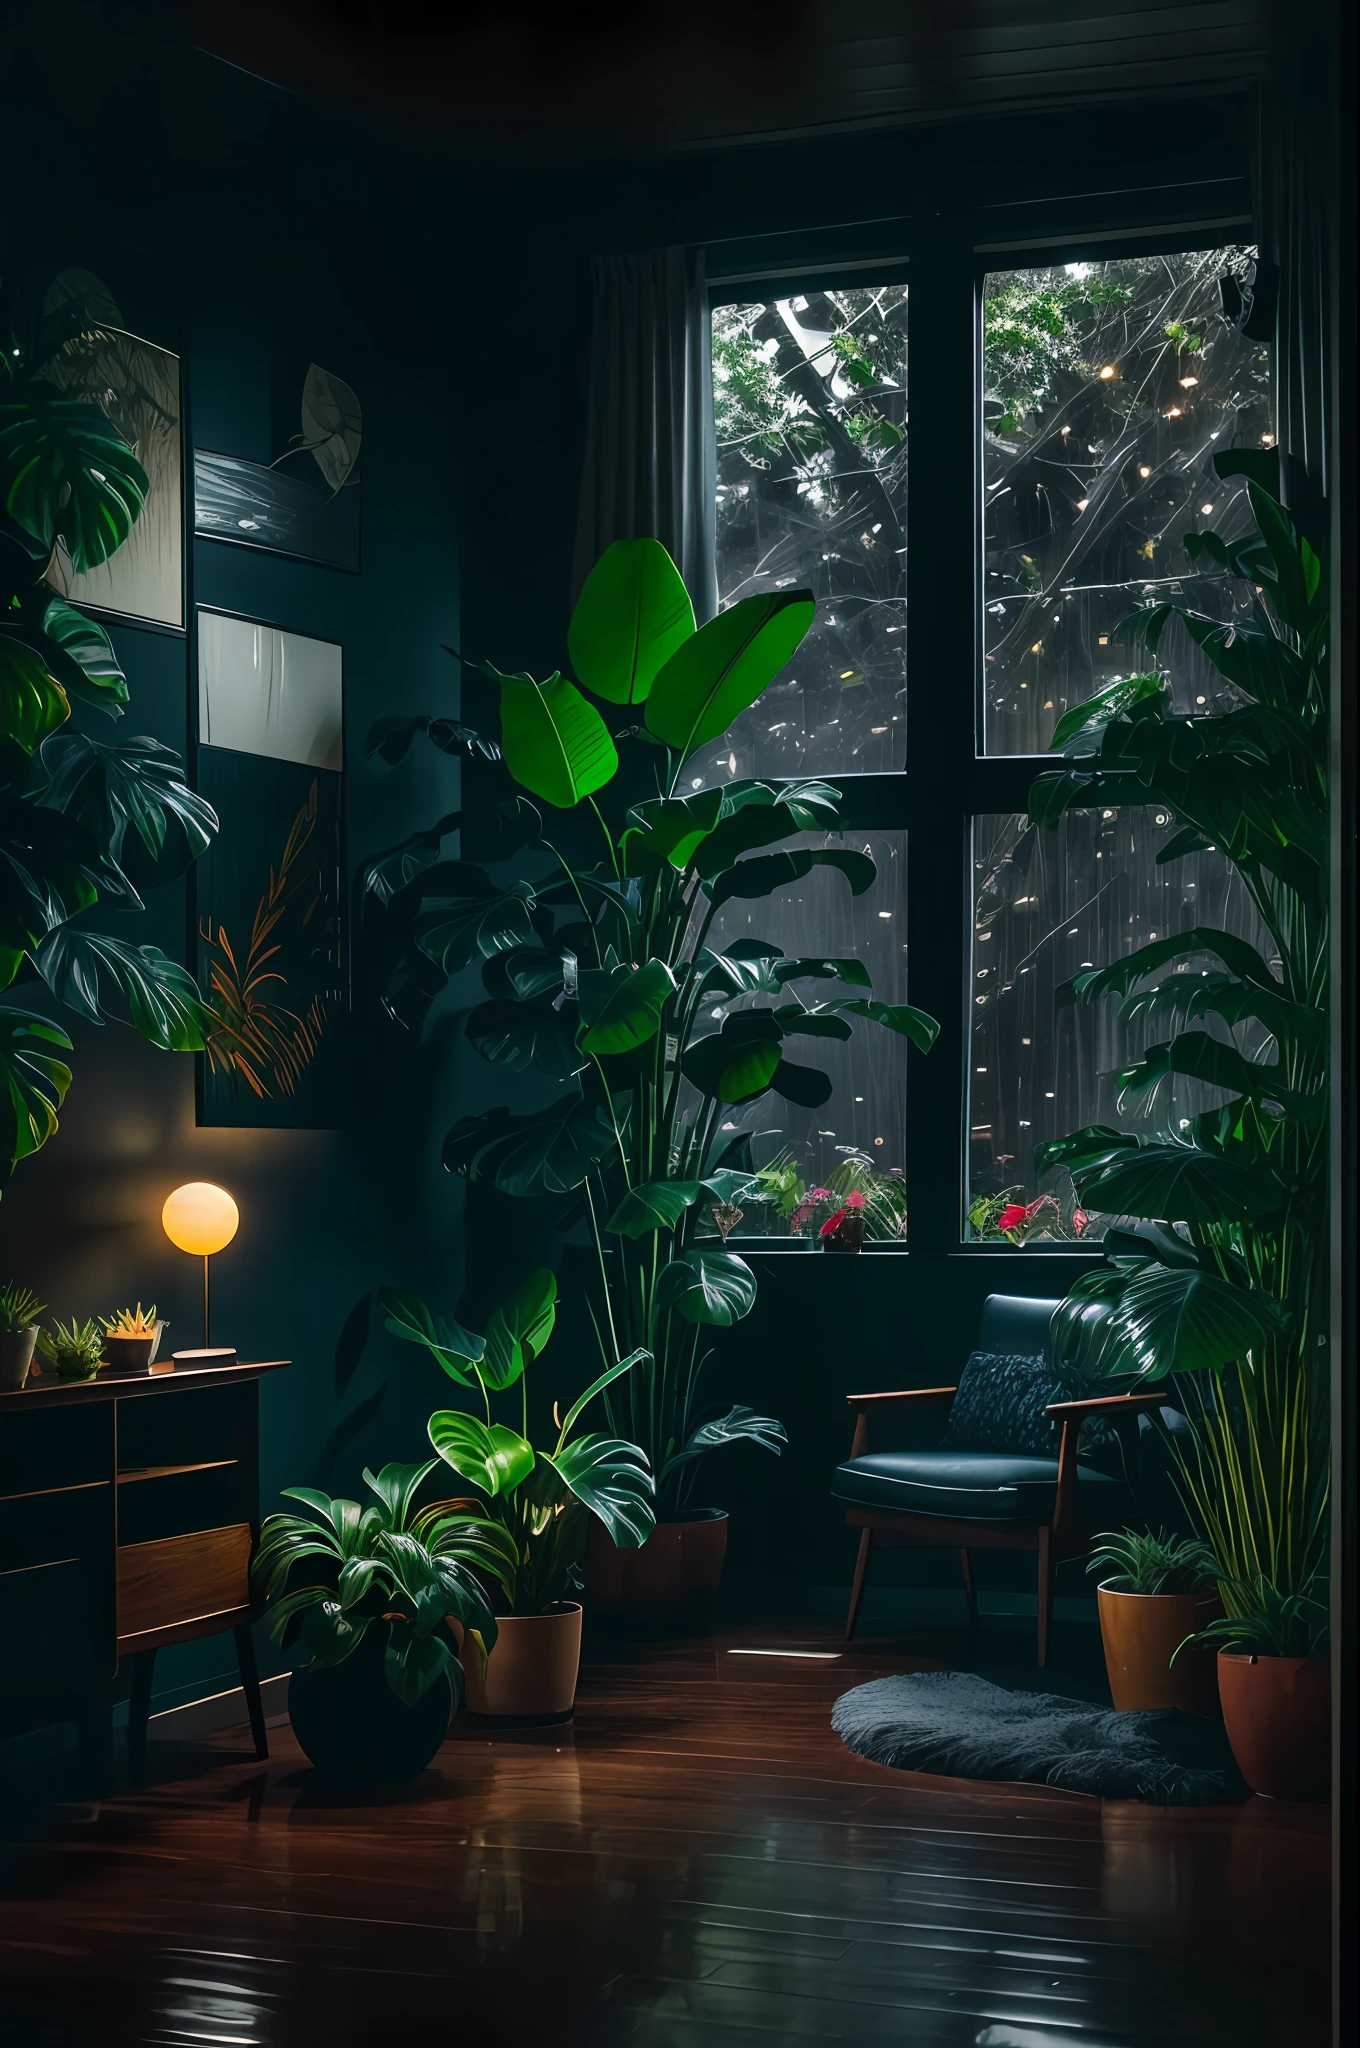 dimly lit mid-century modern living room with dark and chuvoso noite outside, (chuvoso and foggy noite: 1.2), noroeste Pacífico, (Iluminação fraca: 1.4), (Iluminação fraca: 1.2), plantas, large plantas, chuvoso, monstro, many plantas, (janelas embaçadas:1.2), Obra de arte, melhor qualidade, hora do crepúsculo, (noite:1.4), tarde chuvosa, após o por do sol,